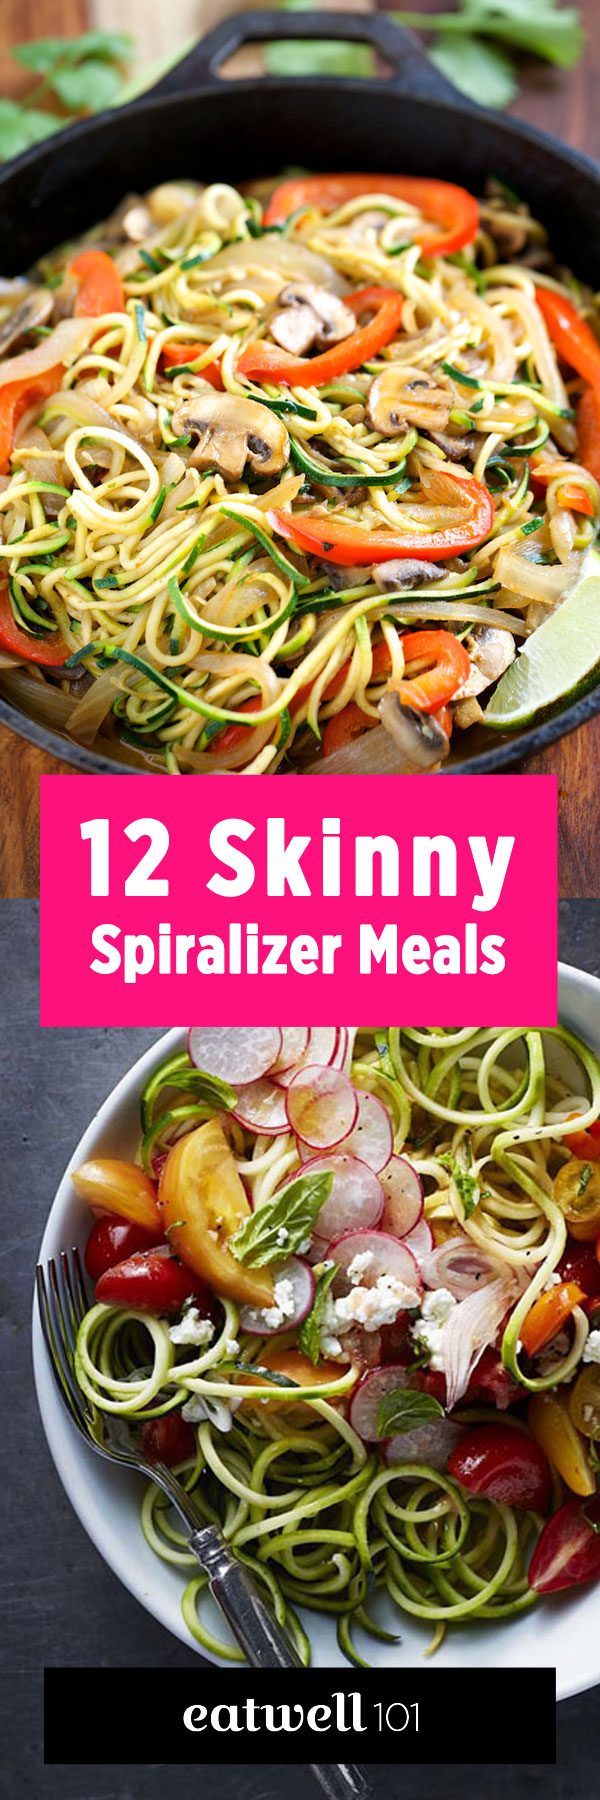 skinny spiralizer meals